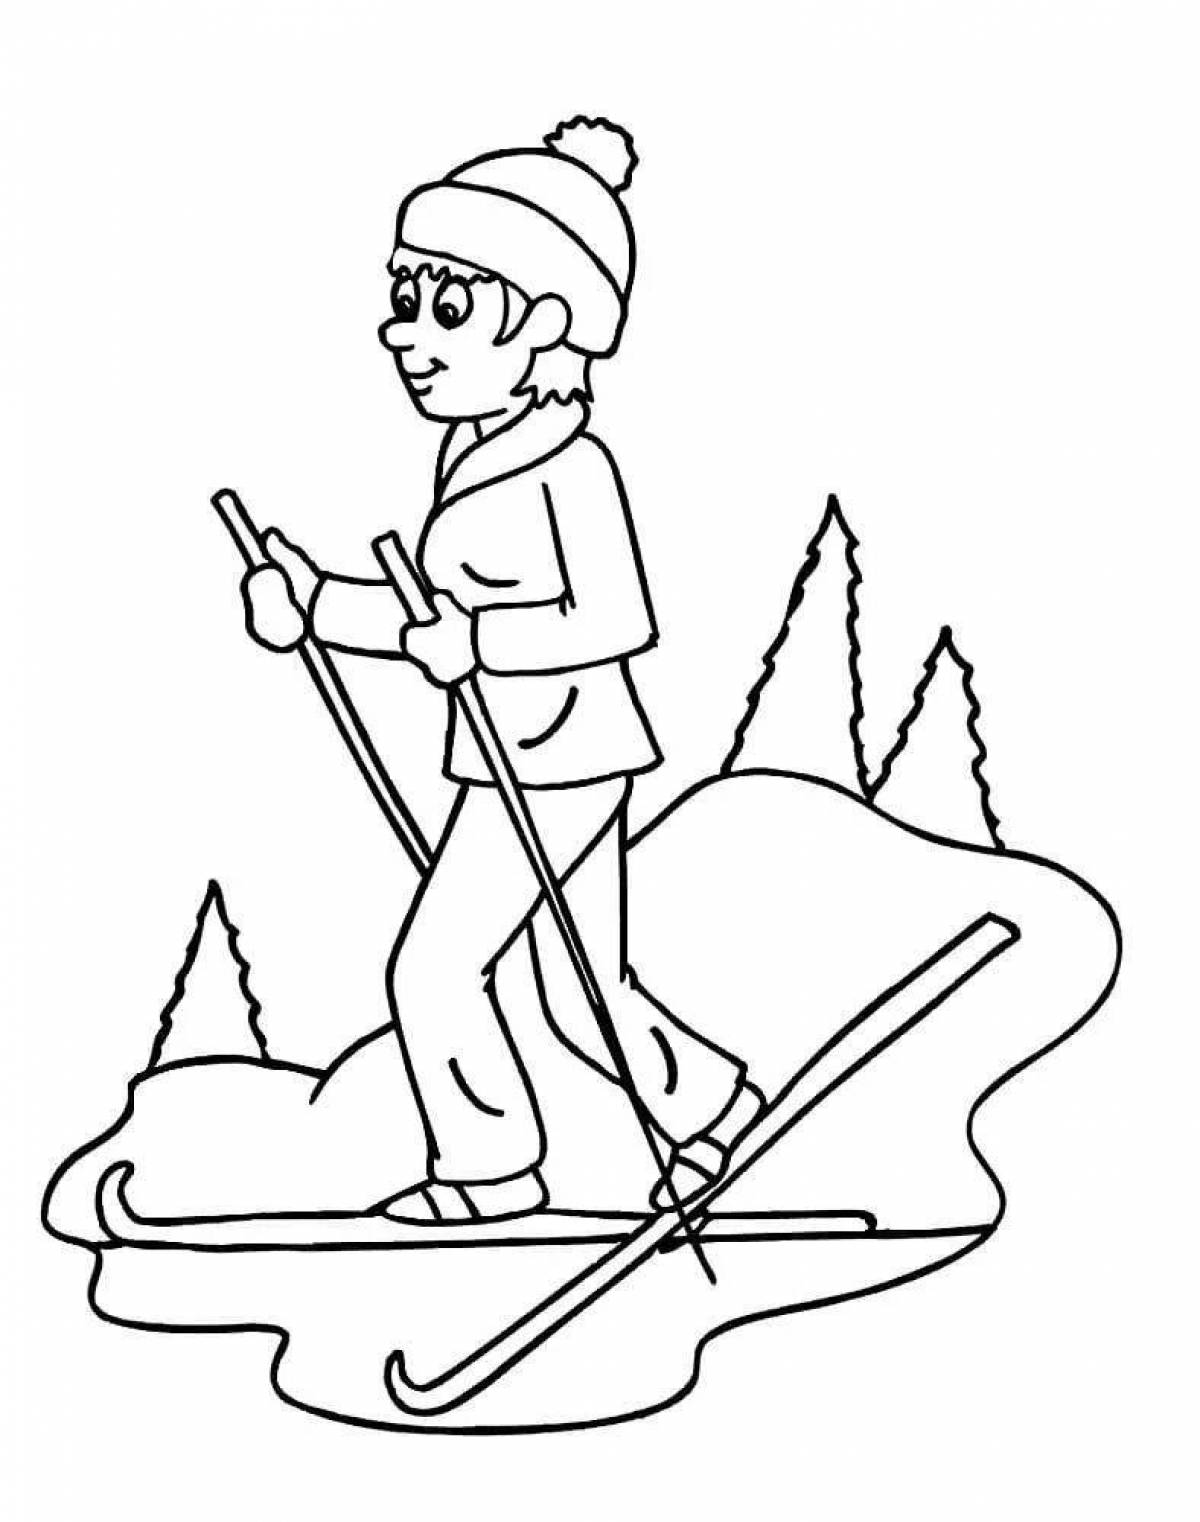 Раскраска смелый мальчик на лыжах